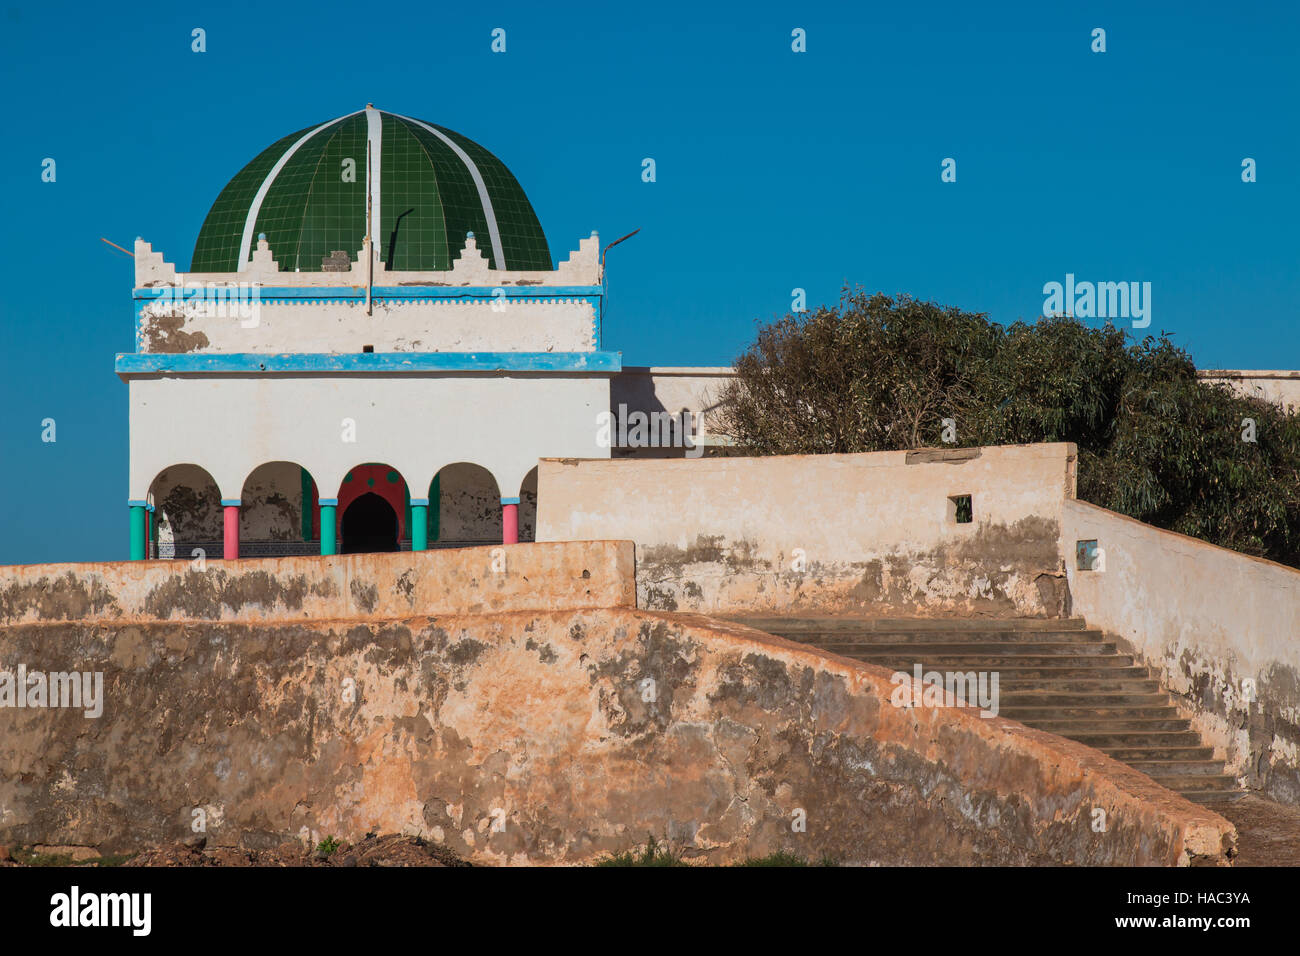 Mosquée construite sur une colline sur la côte de l'océan Atlantique dans une ville marocaine Sidi Ifni. Détails colorés de la mosquée. Ciel bleu. Vieux escaliers et fe Banque D'Images